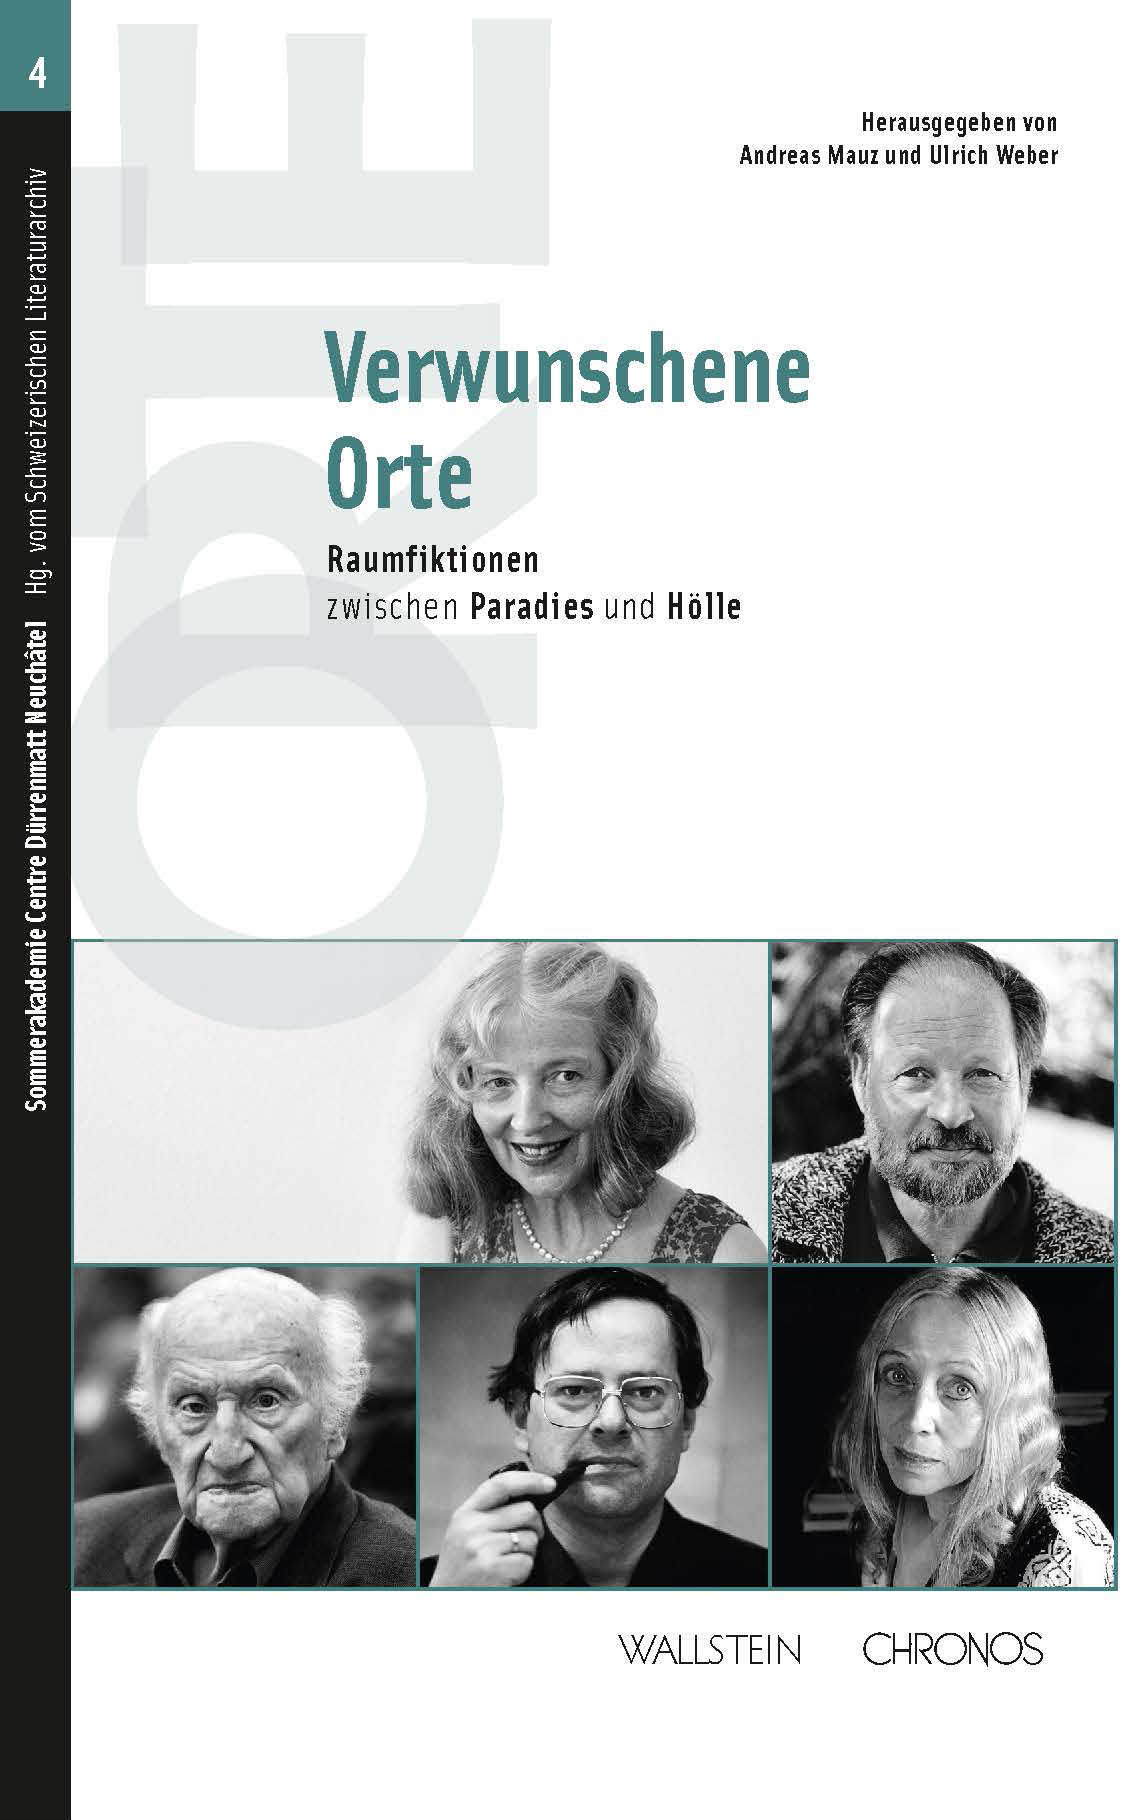 Hsg. von Andreas Mauz und Ulrich Weber: «Verwunschene Orte» – Raumfiktionen
zwischen Paradies und Hölle.